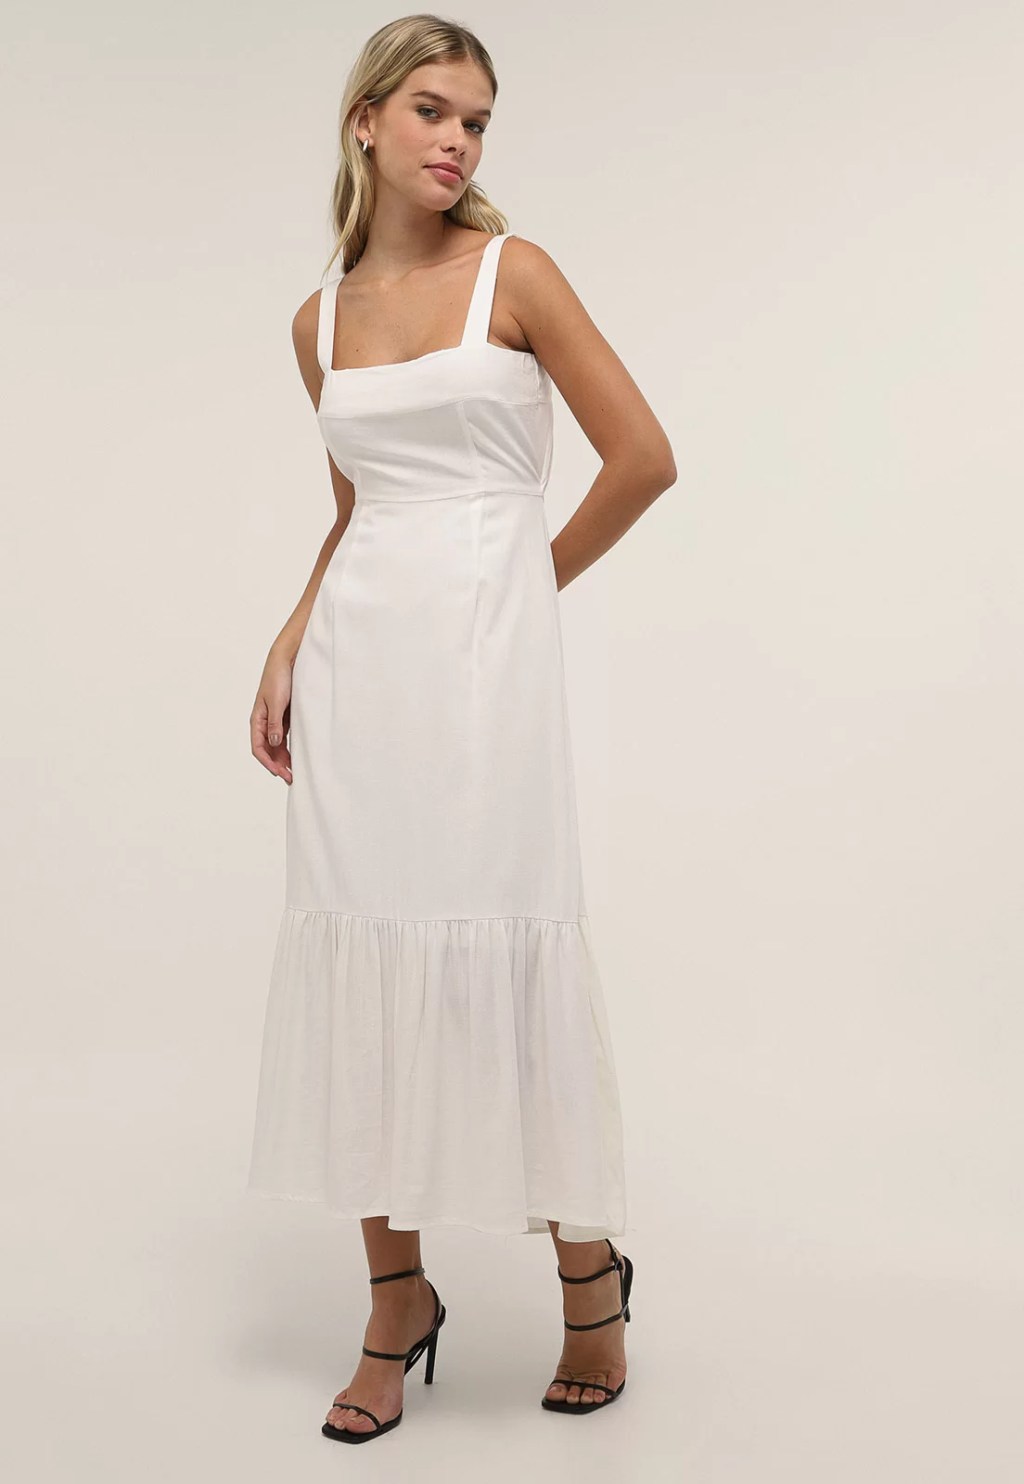 Vestido branco longo